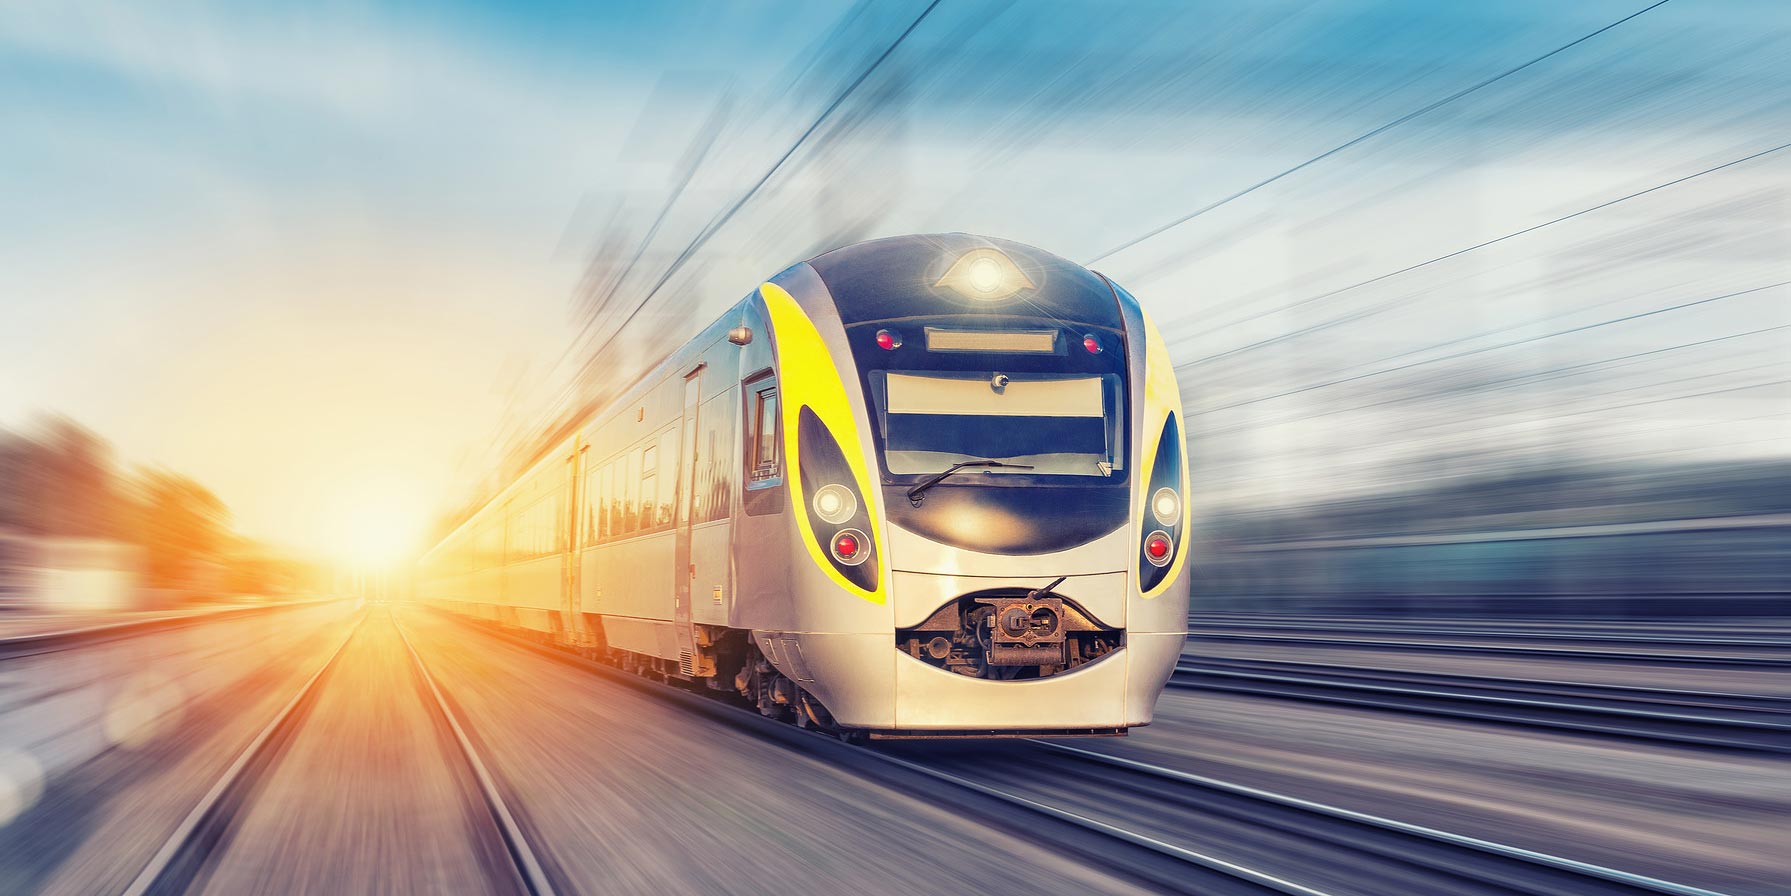 Mit Express-S-Bahnen auf vorhandener Infrastruktur deutlich schneller